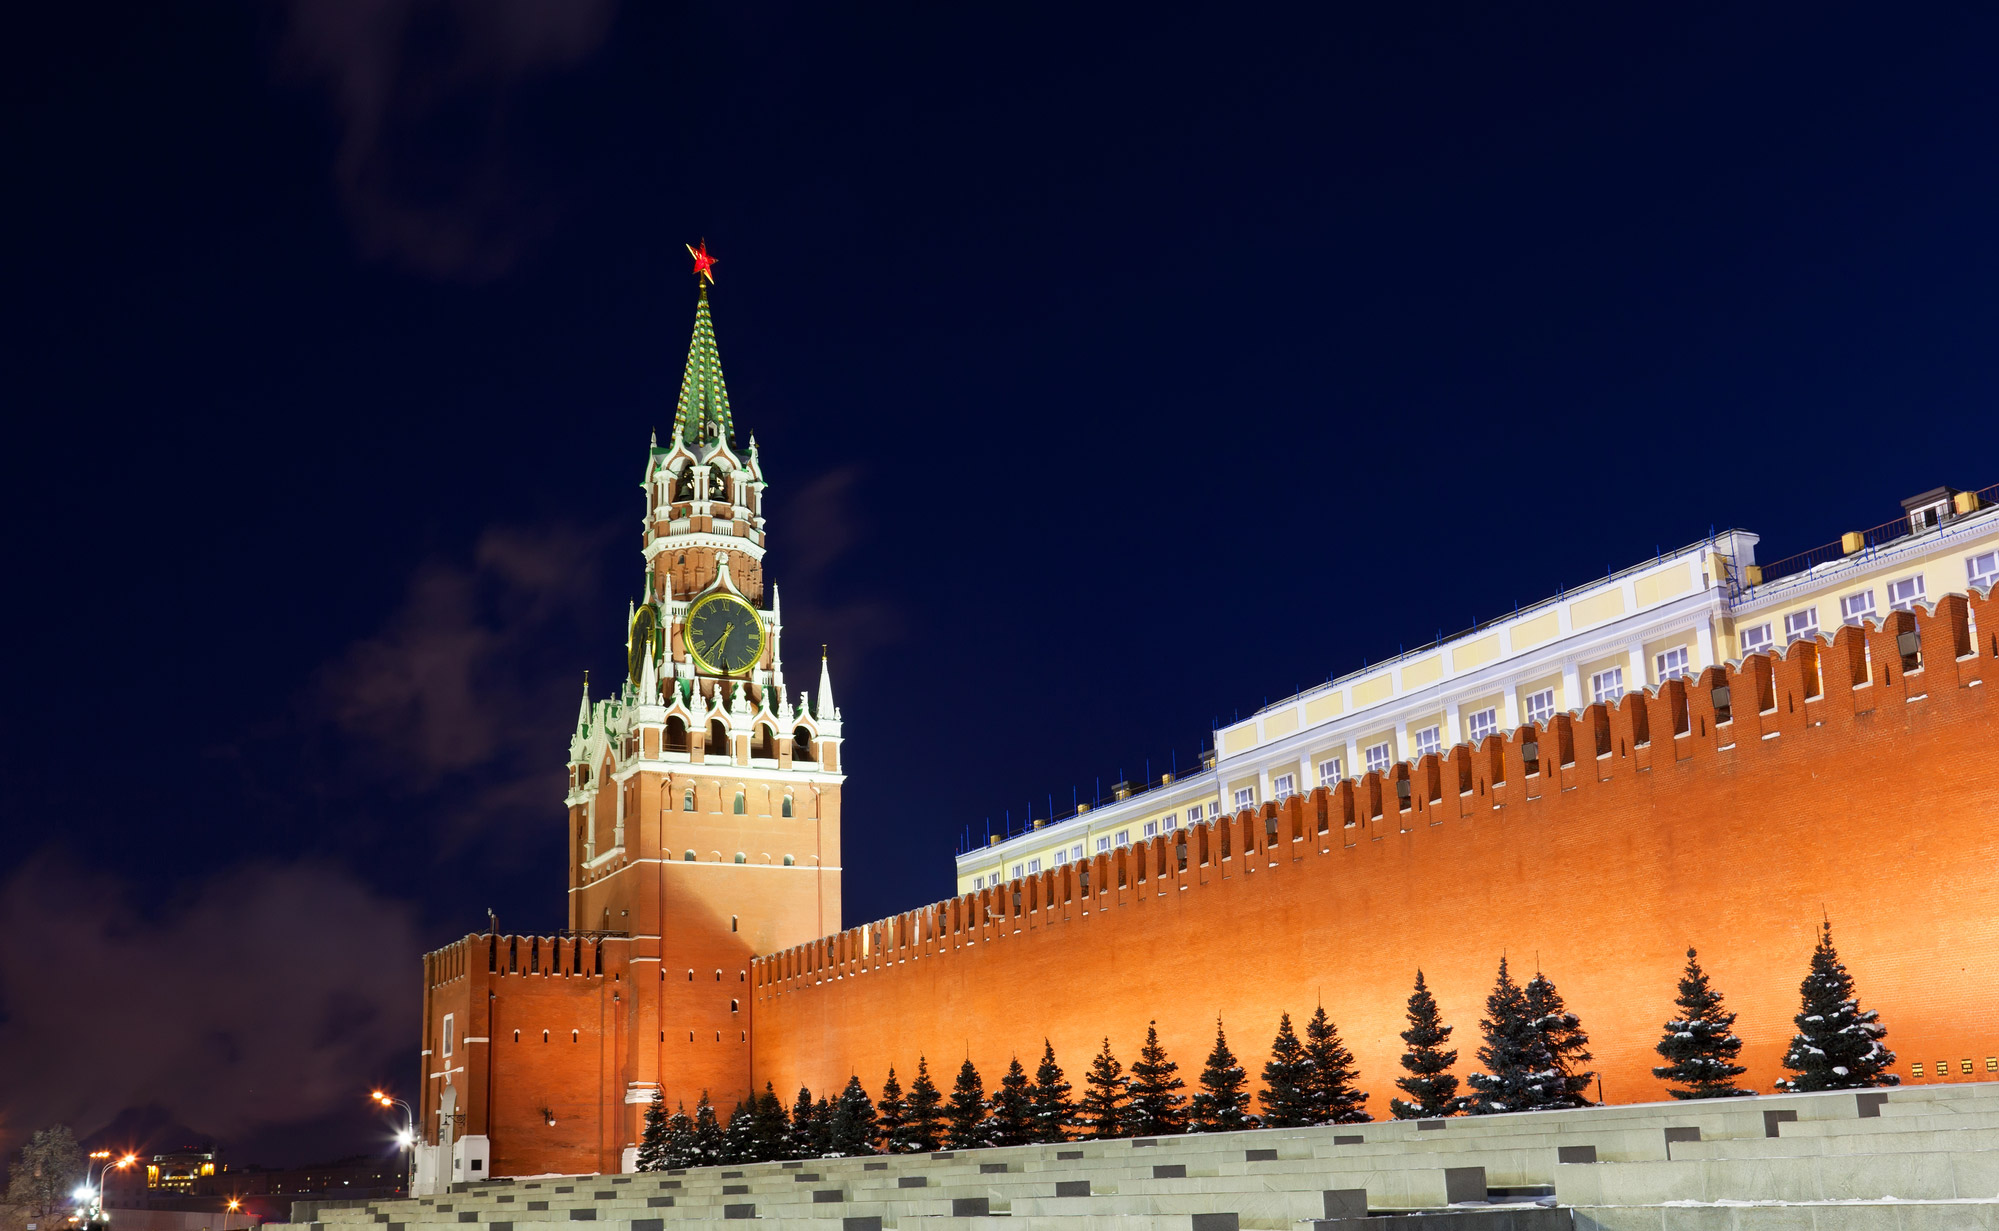 Фото московского кремля рисунок